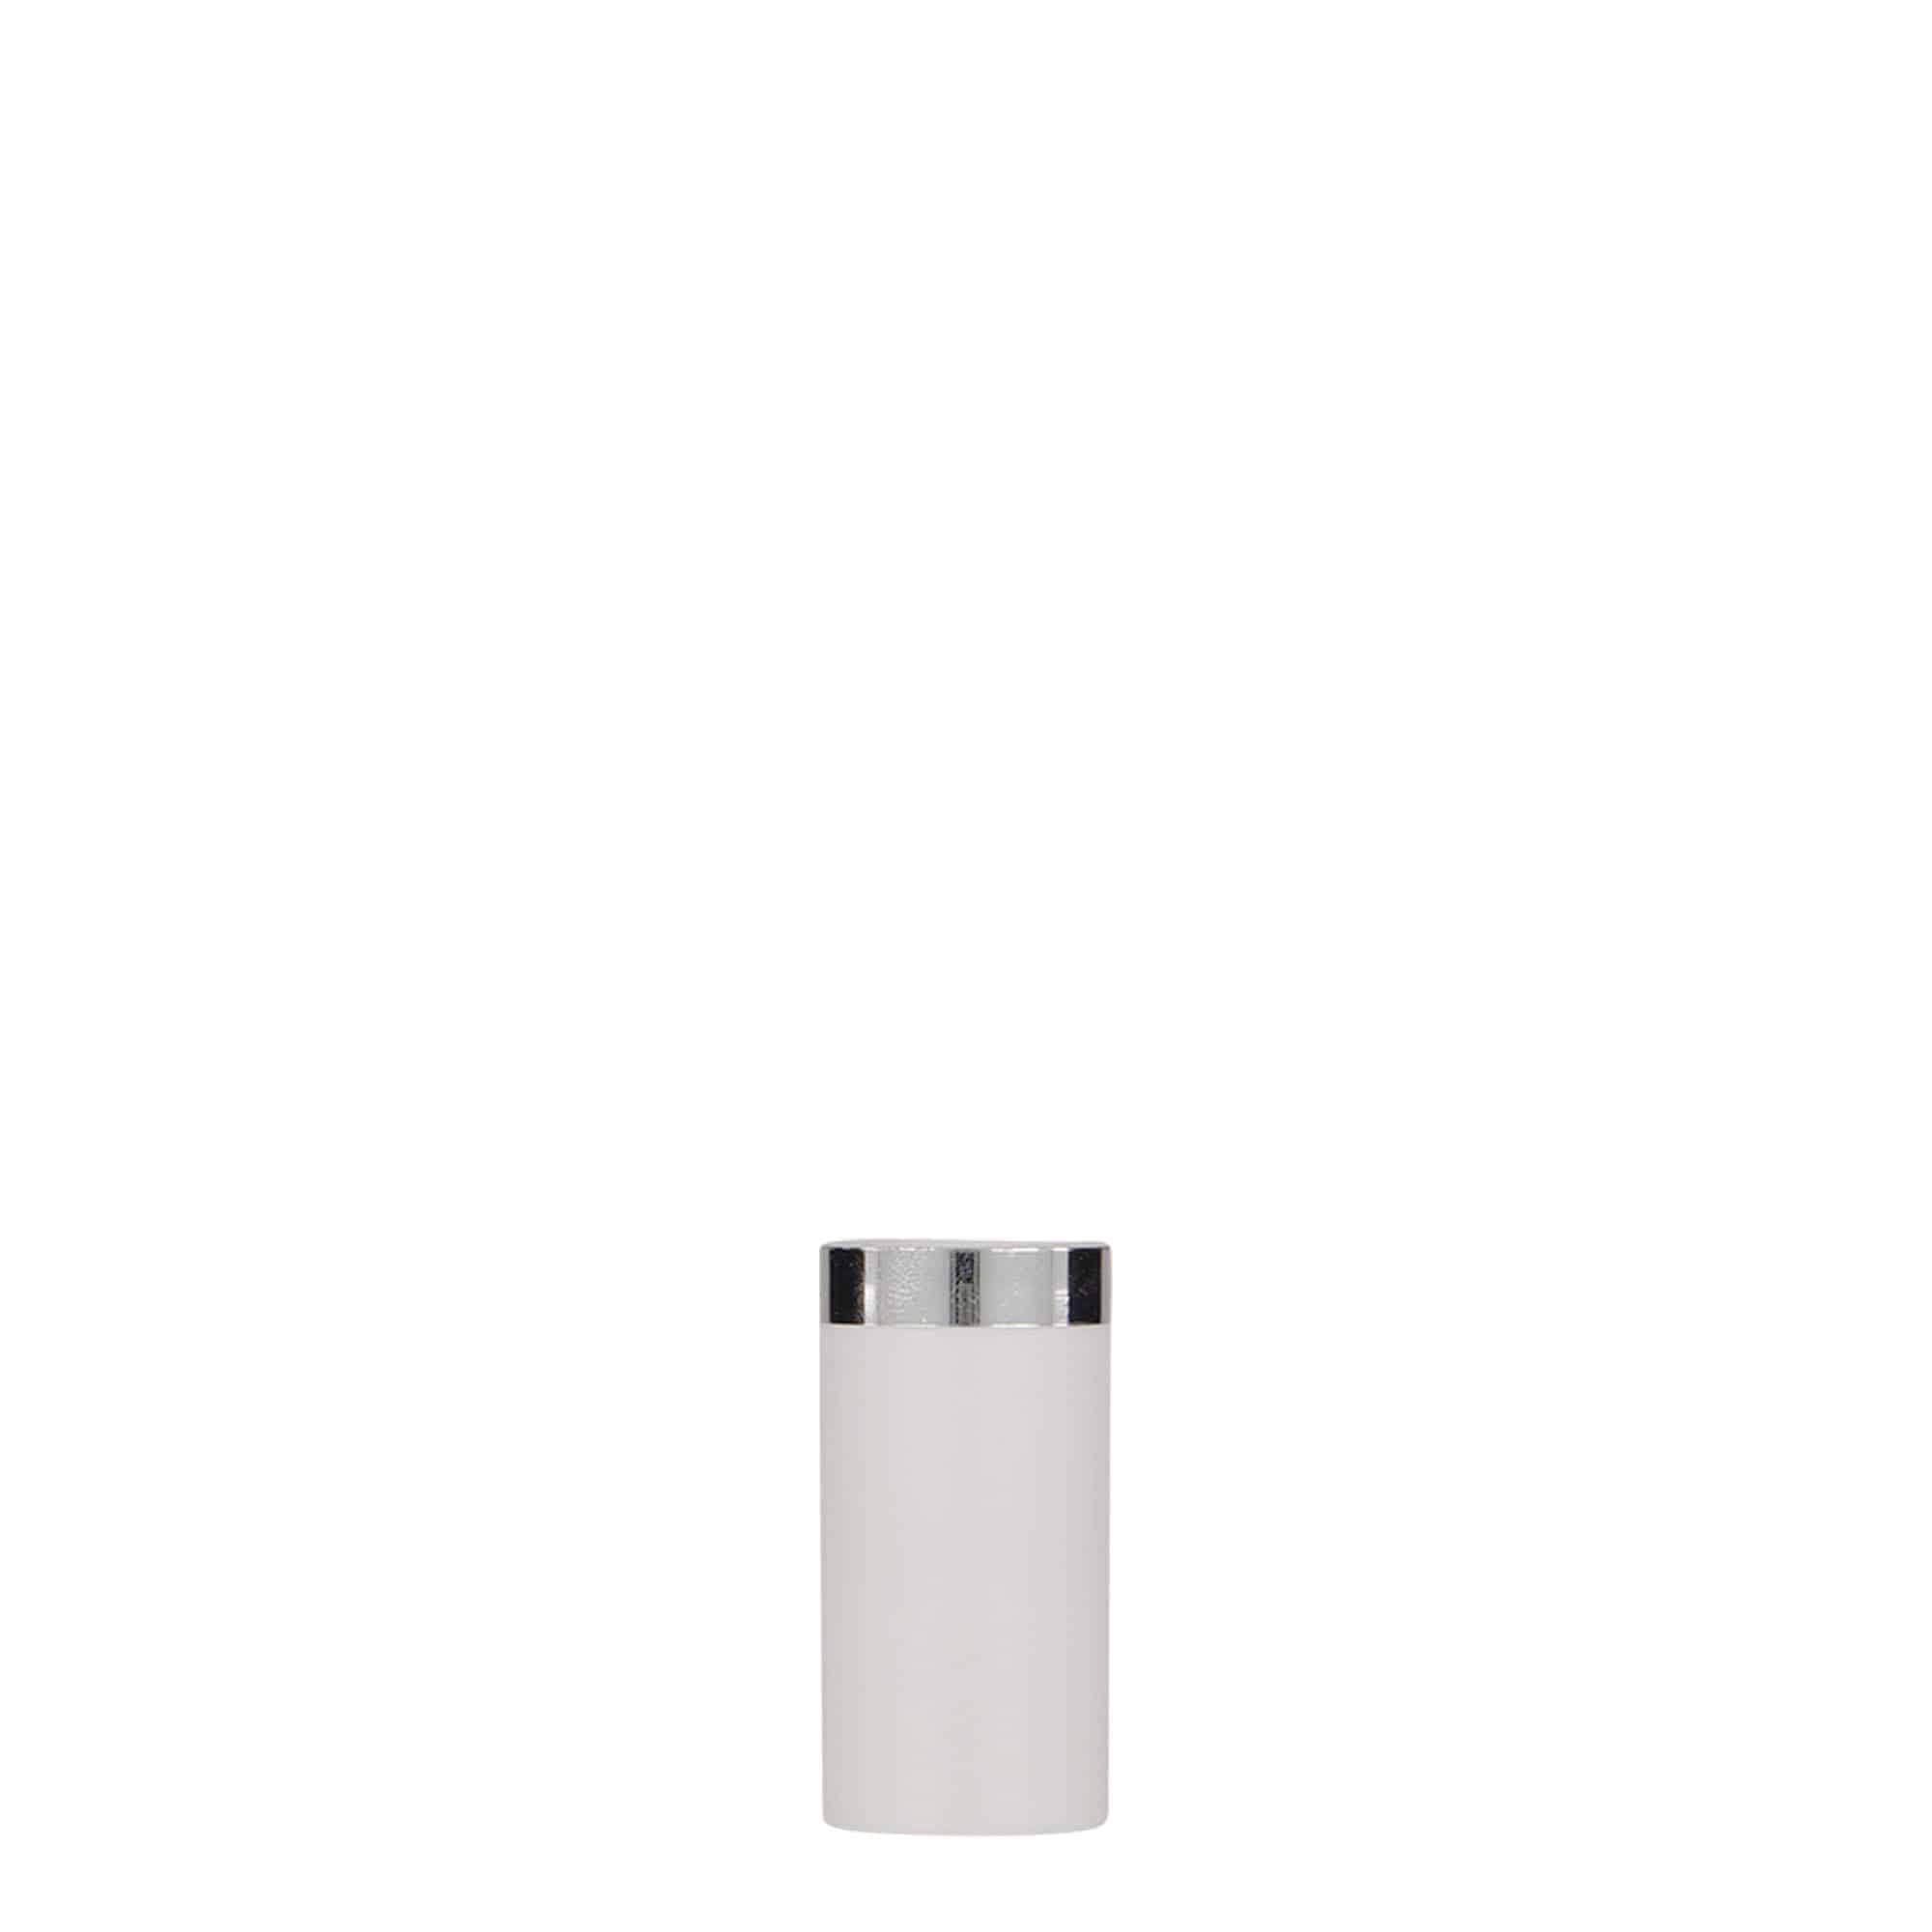 Bezvzduchový dávkovač 5 ml 'Nano', plast PP, bílý